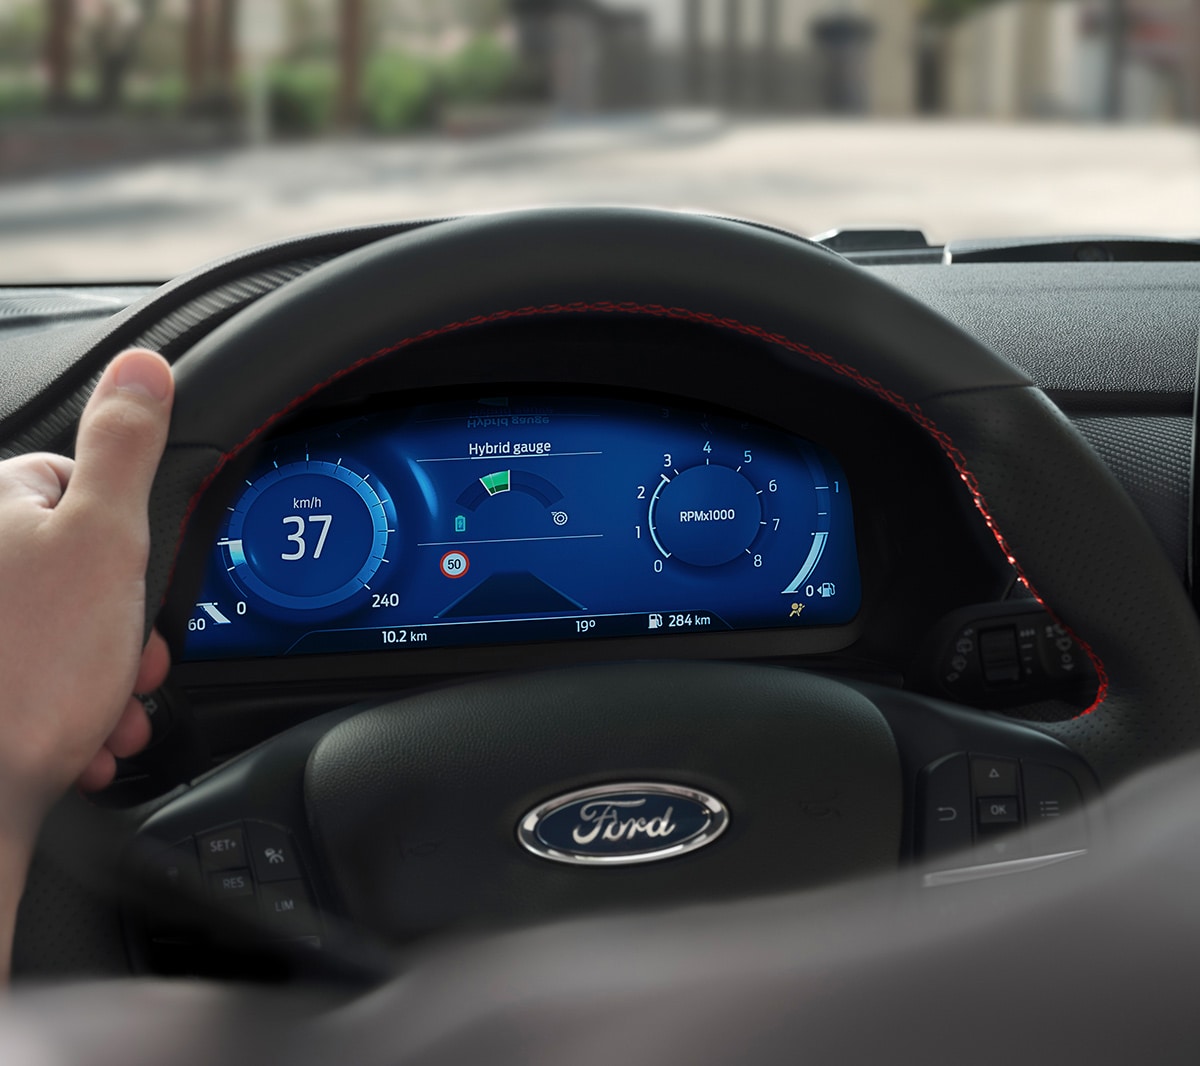 Ford Fiesta Innenraum. Detailansicht des Lenkrads mit digitaler Instrumententafel im Hintergrund.